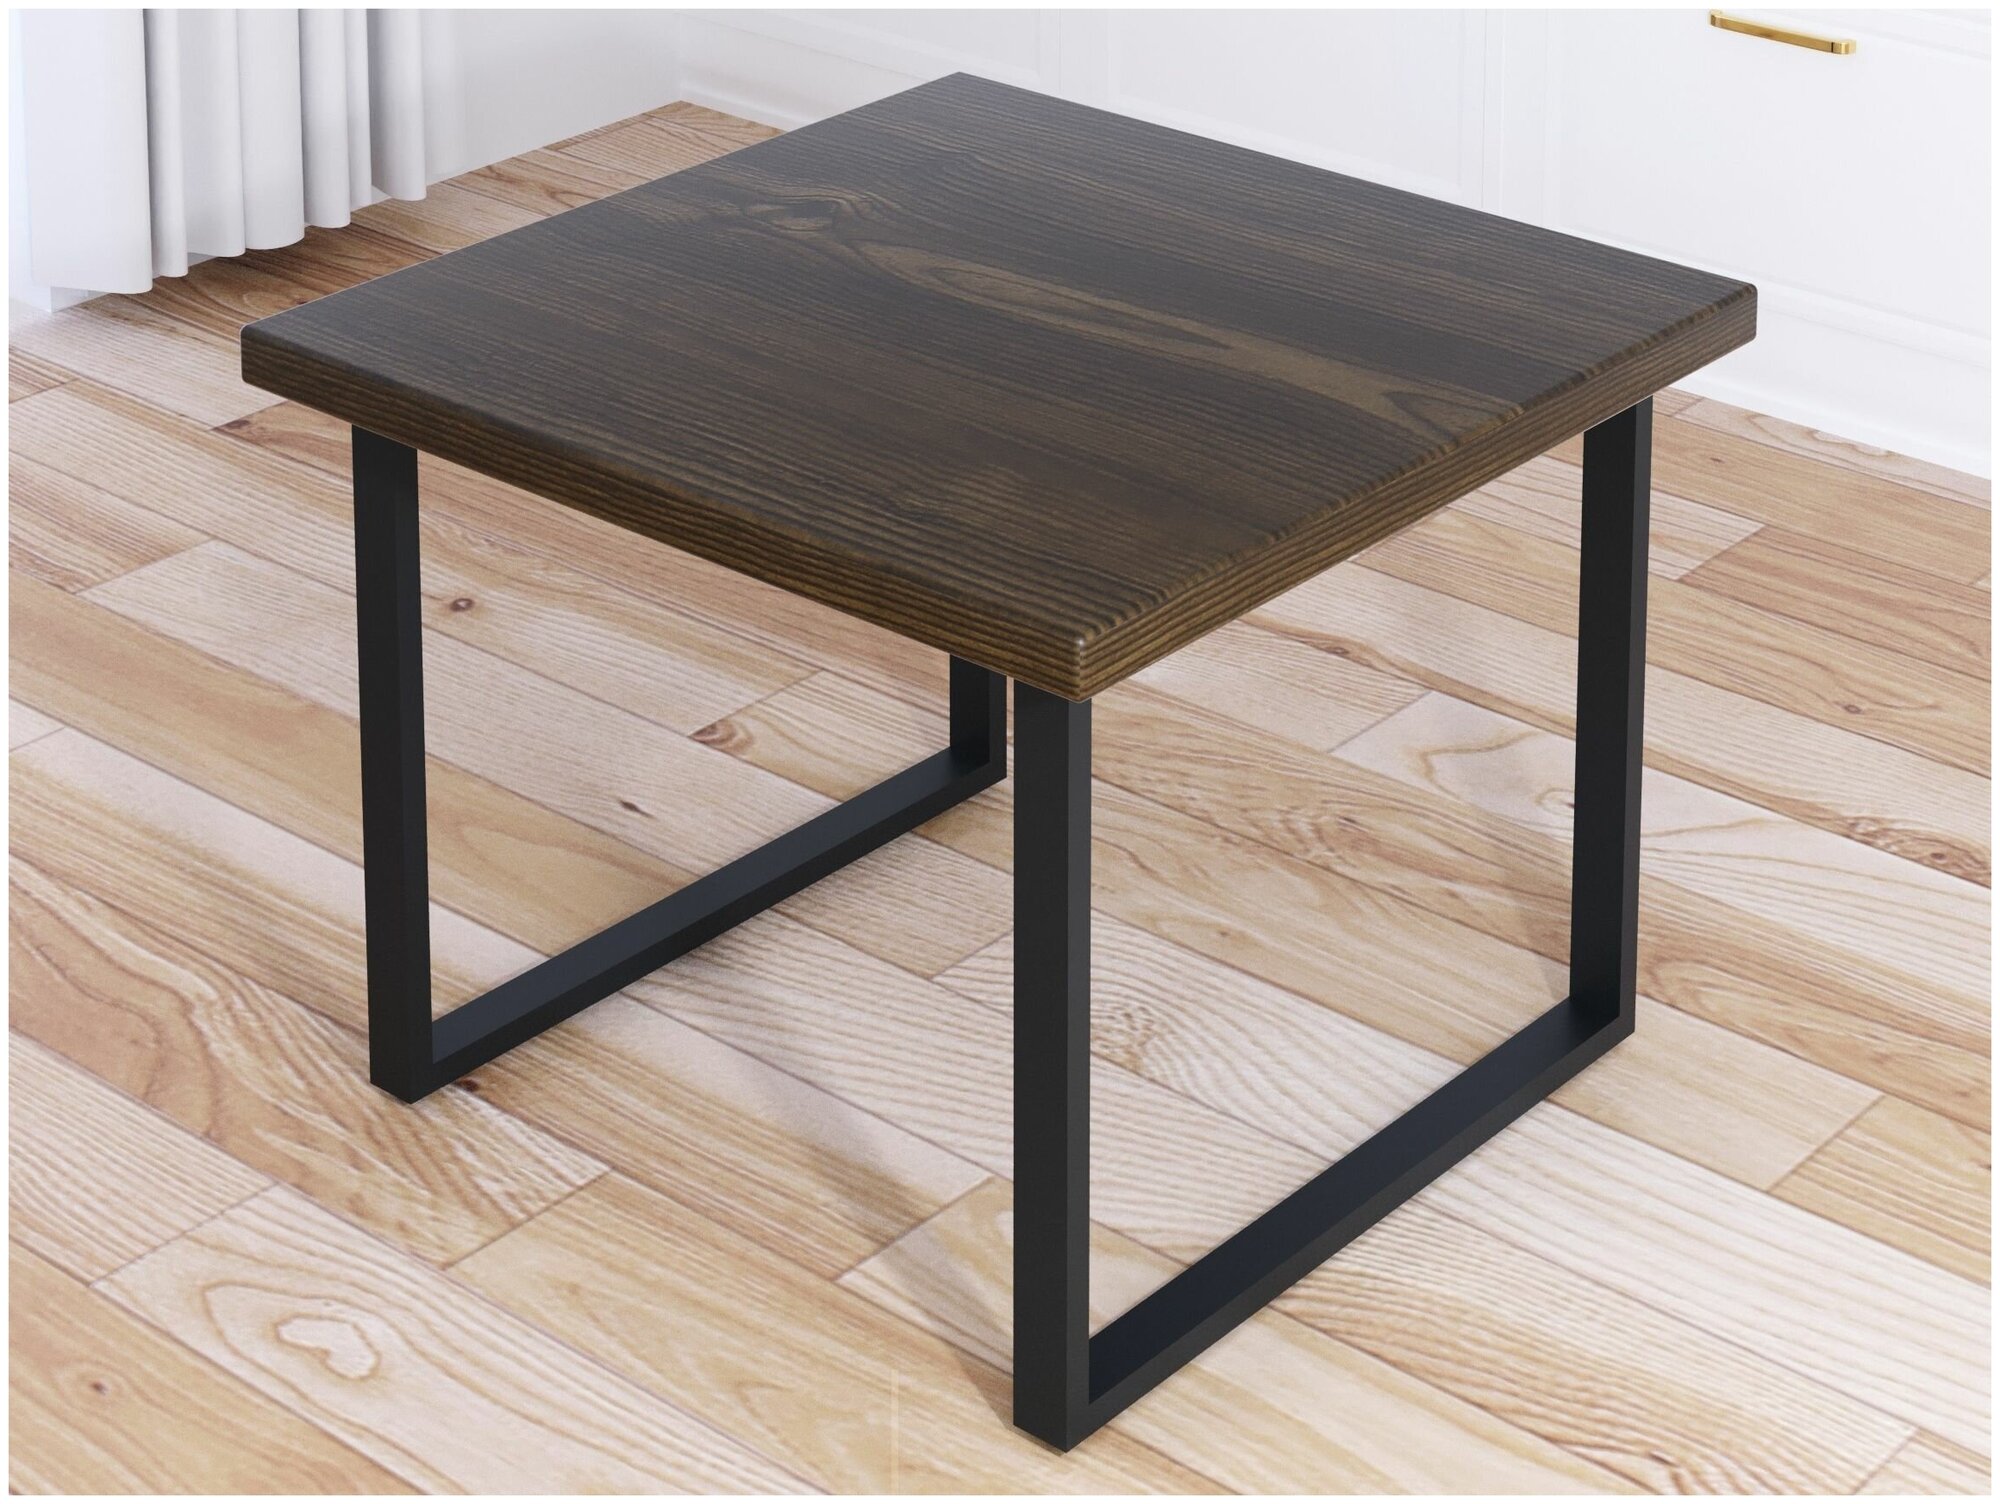 Стол журнальный Loft квадратный со столешницей цвета темного дуба из массива сосны 40 мм и черными металлическими ножками, 60x60х50 см